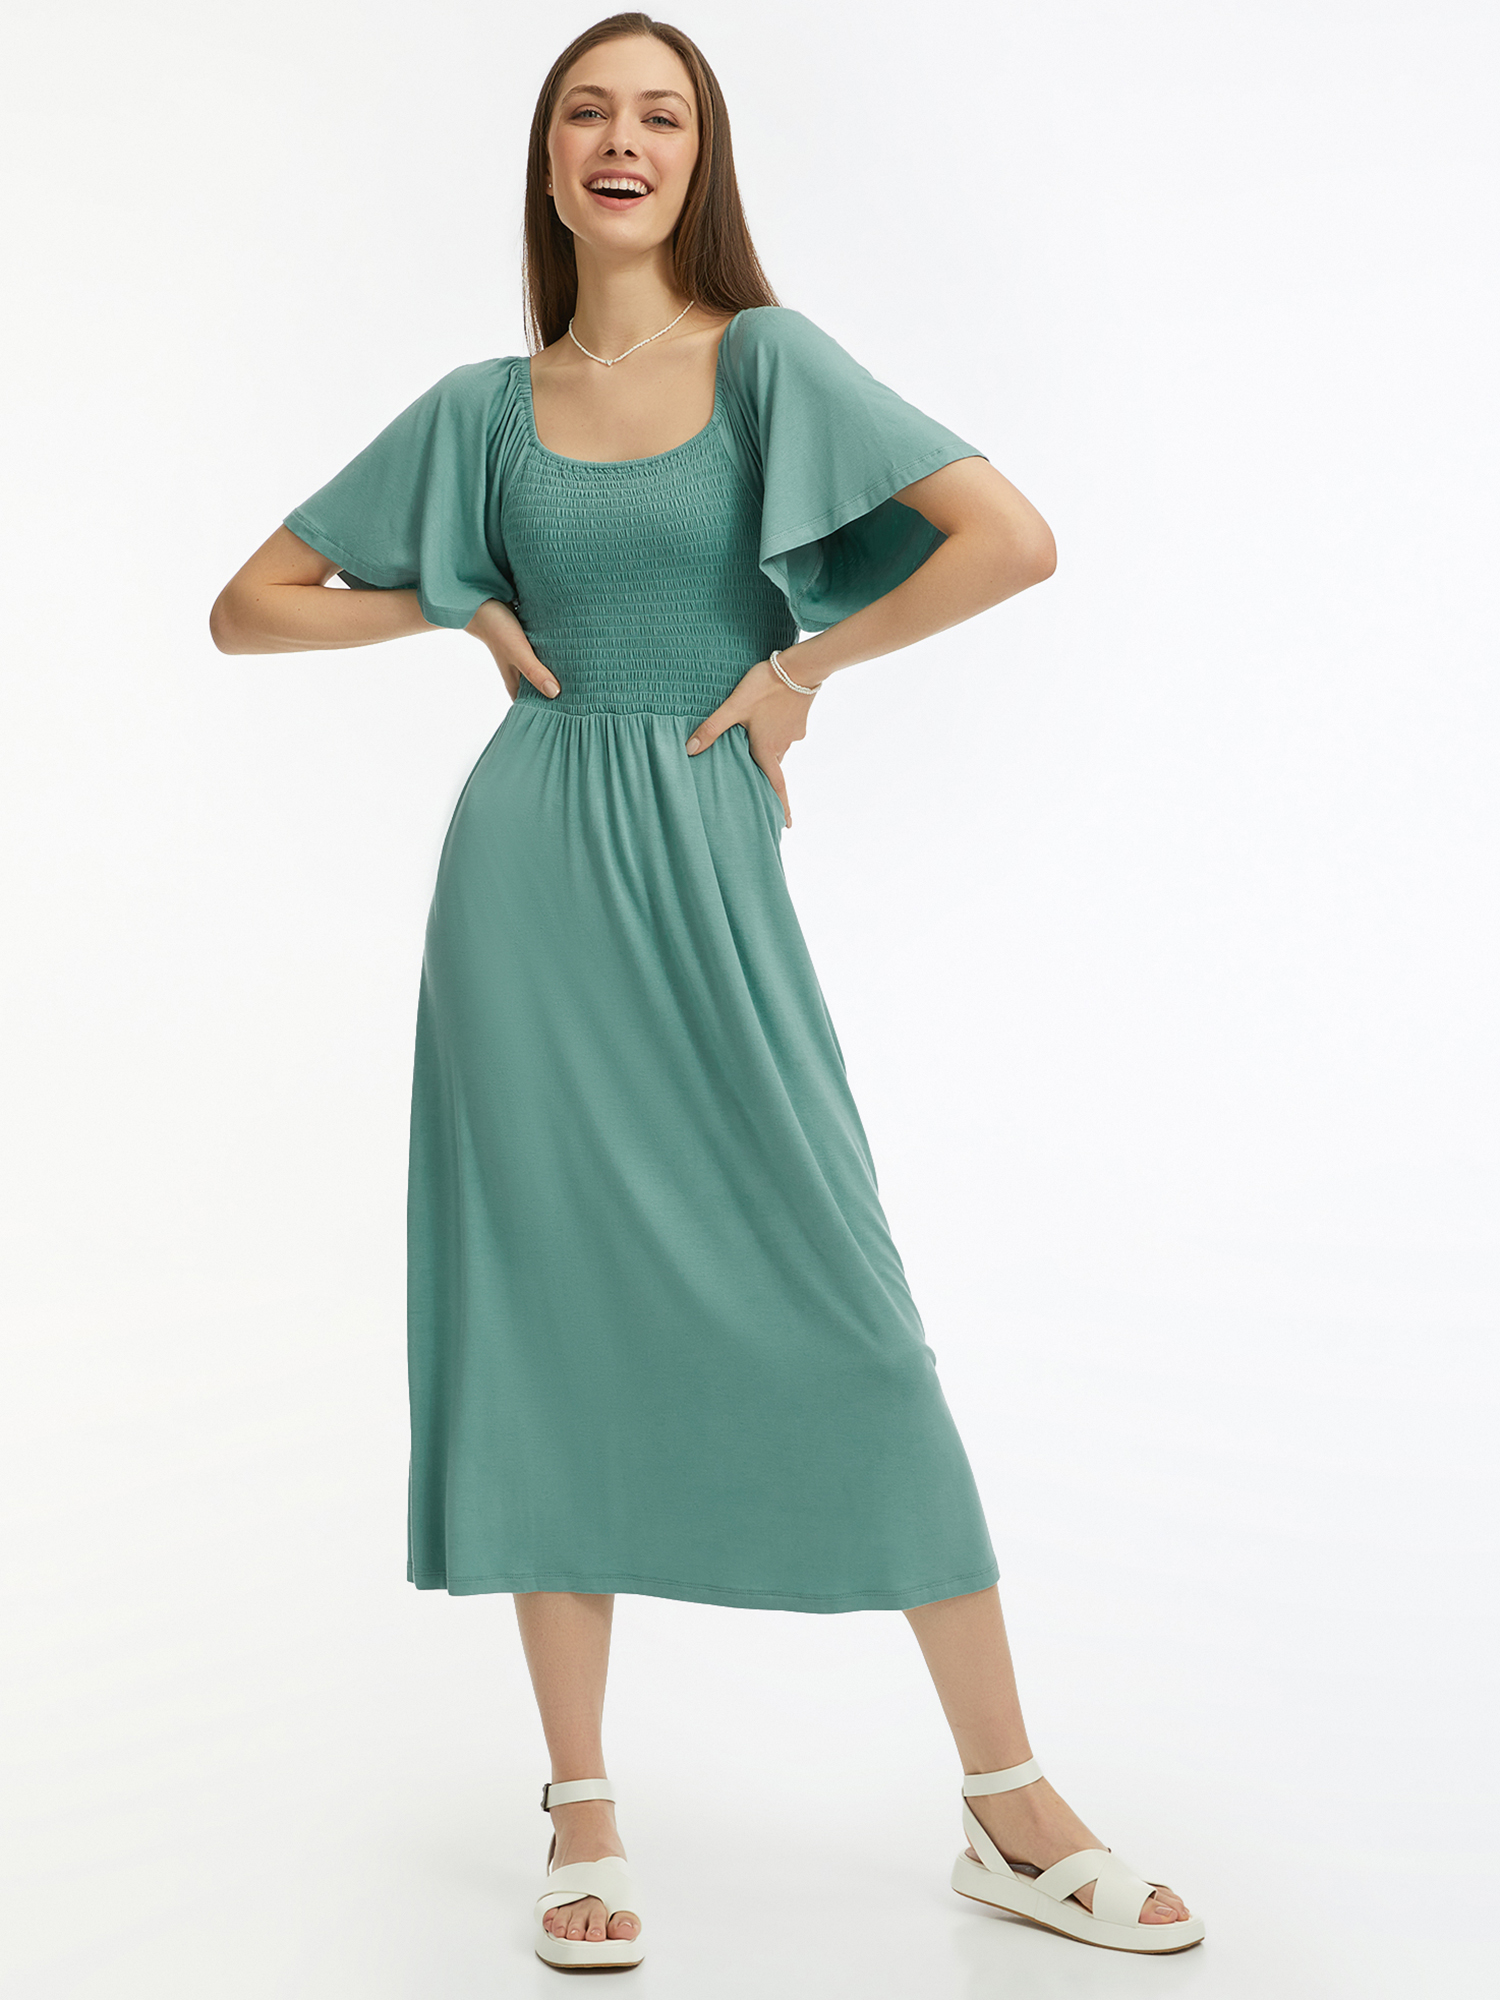 Платье женское oodji 14000184 зеленое XS